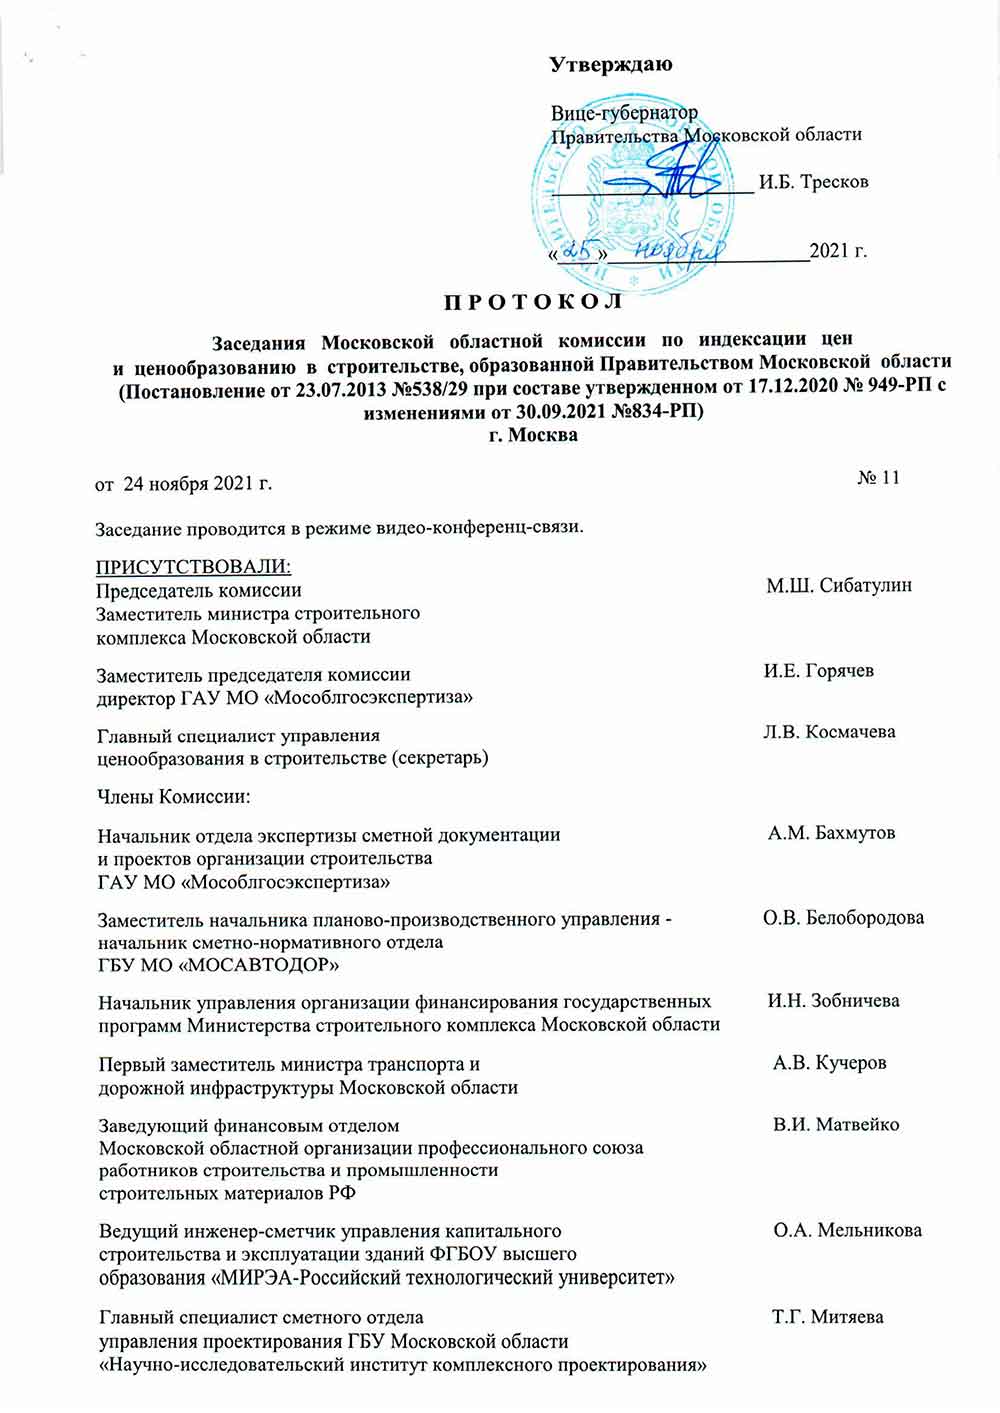 Протокол Мособлгосэкспертизы №11 от 24.11.2021 года